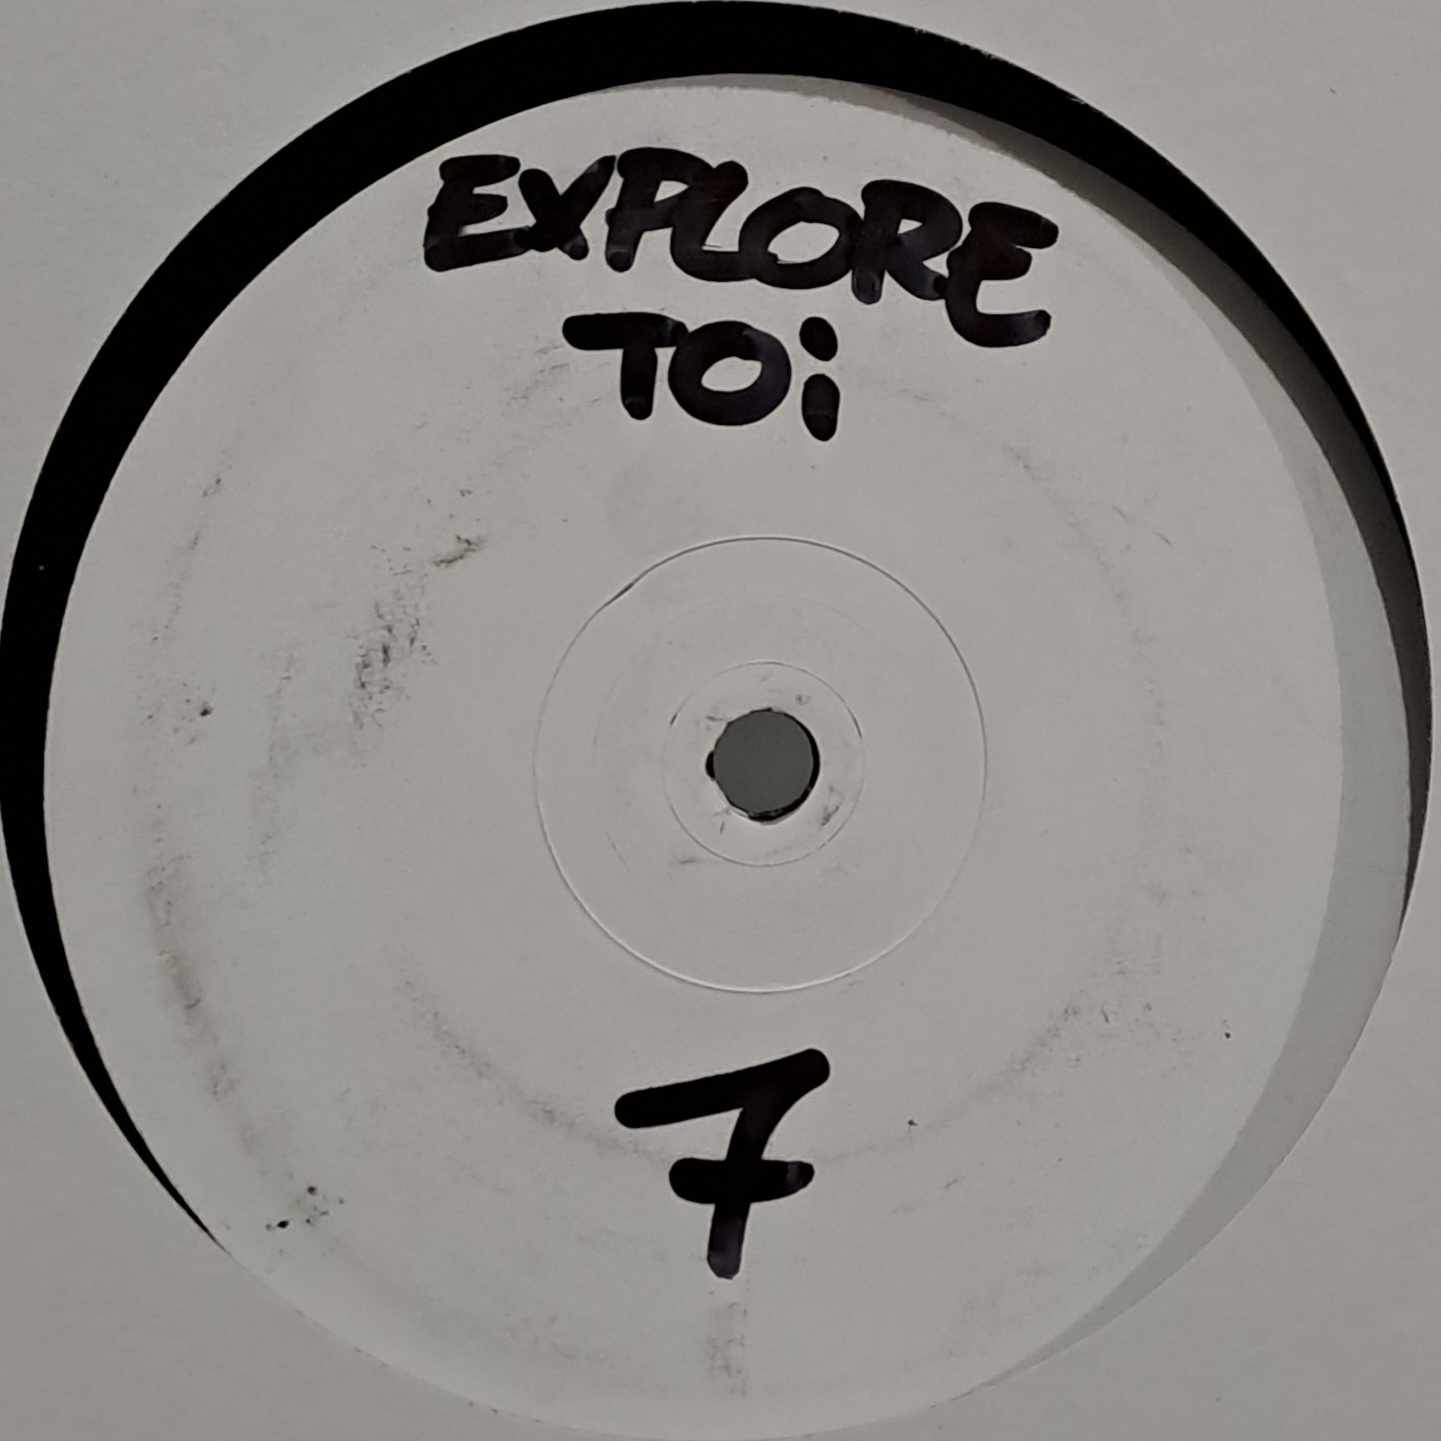 Explore Toi 07 - vinyle freetekno